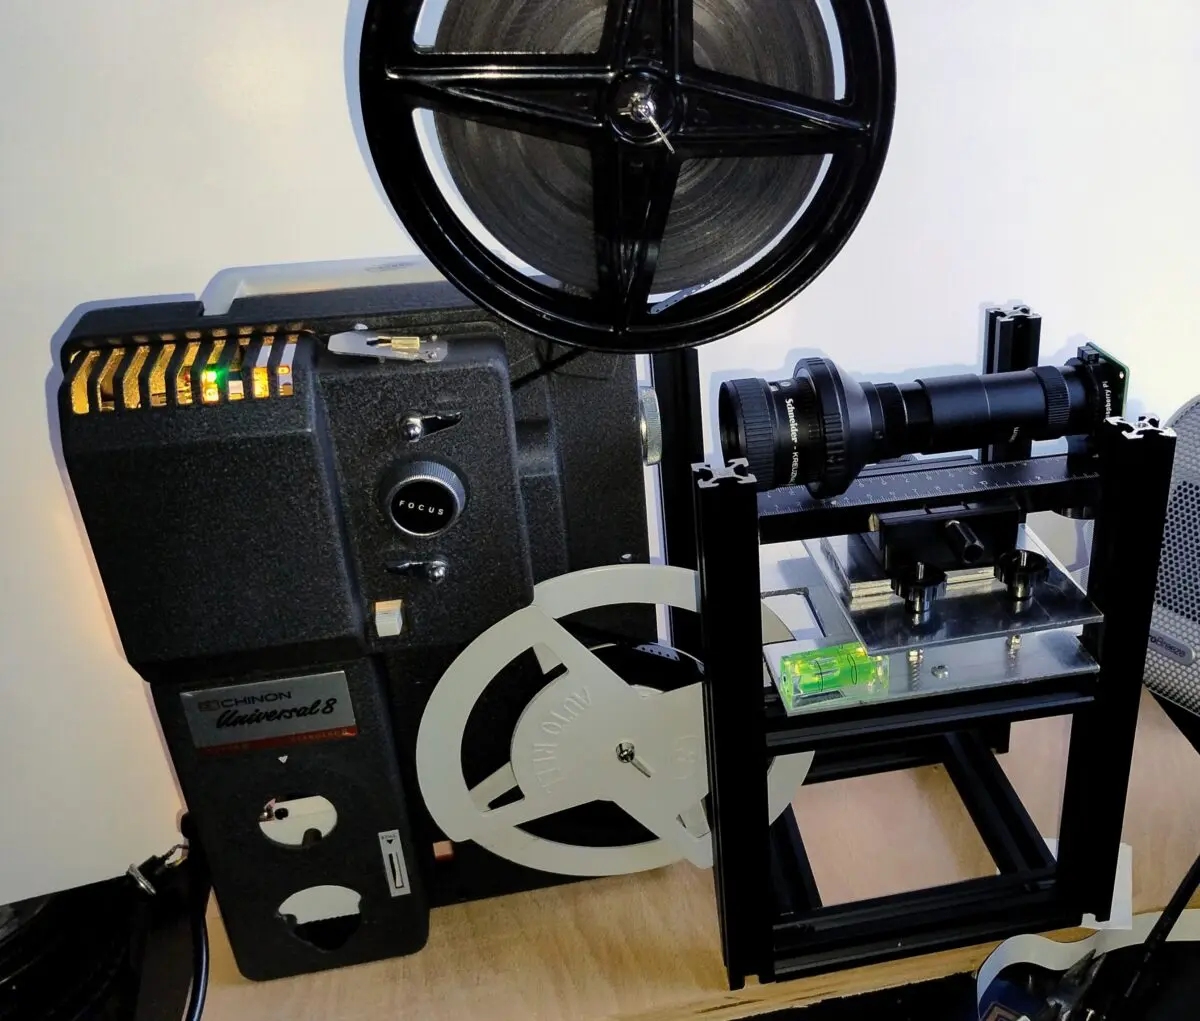 8mm film scanner